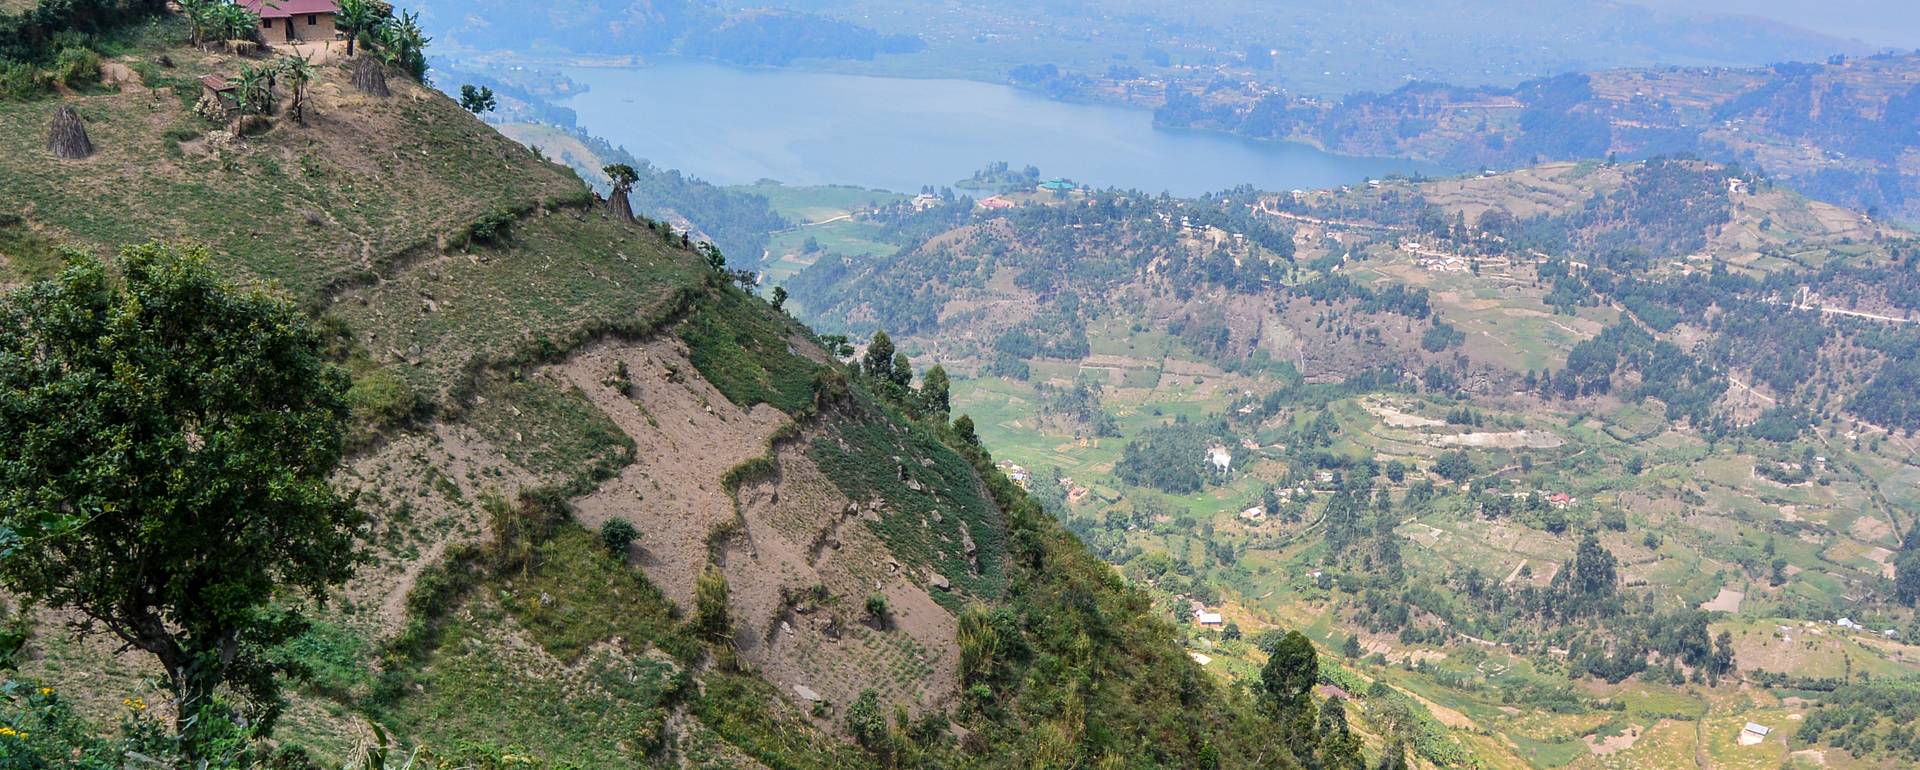 Landschaften in Uganda und Ruanda